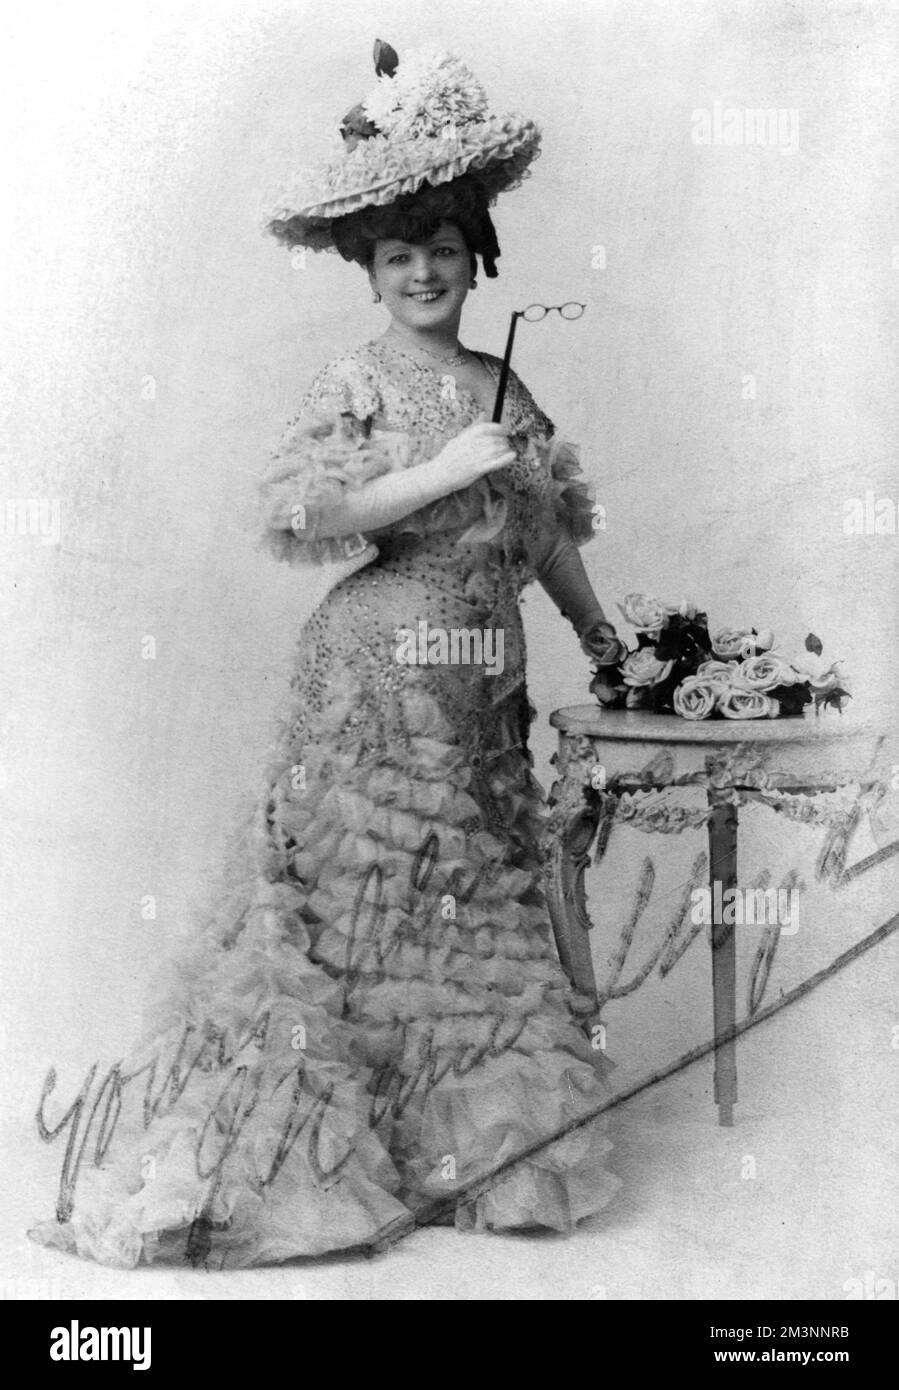 Marie Lloyd, geboren Matilda Alice Victoria Wood (1870 - 1922), britische Musiksängerin, Entertainerin und Comedienne. Eine Superstar-Weltmeisterin zu ihrer Zeit, die das höchste Gehalt eines Entertainers bestritt. Hier im Bühnenkleid mit einem Lorgnette. Datum: c.1905 Stockfoto